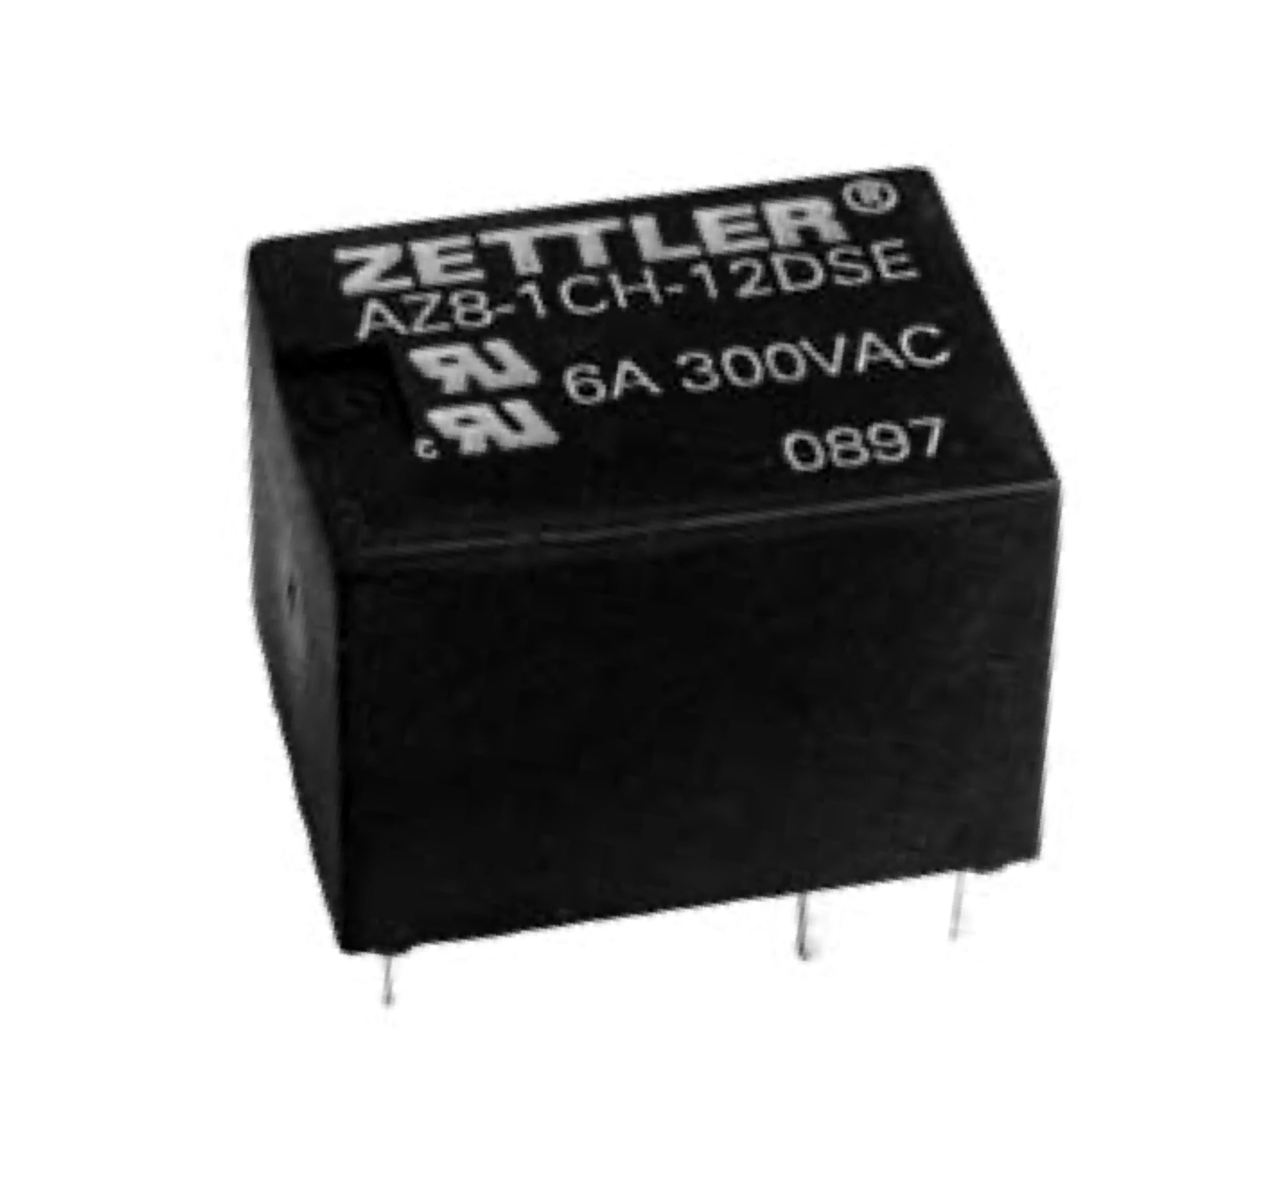 American Zettler AZ8-1CH-9DS Power Relay